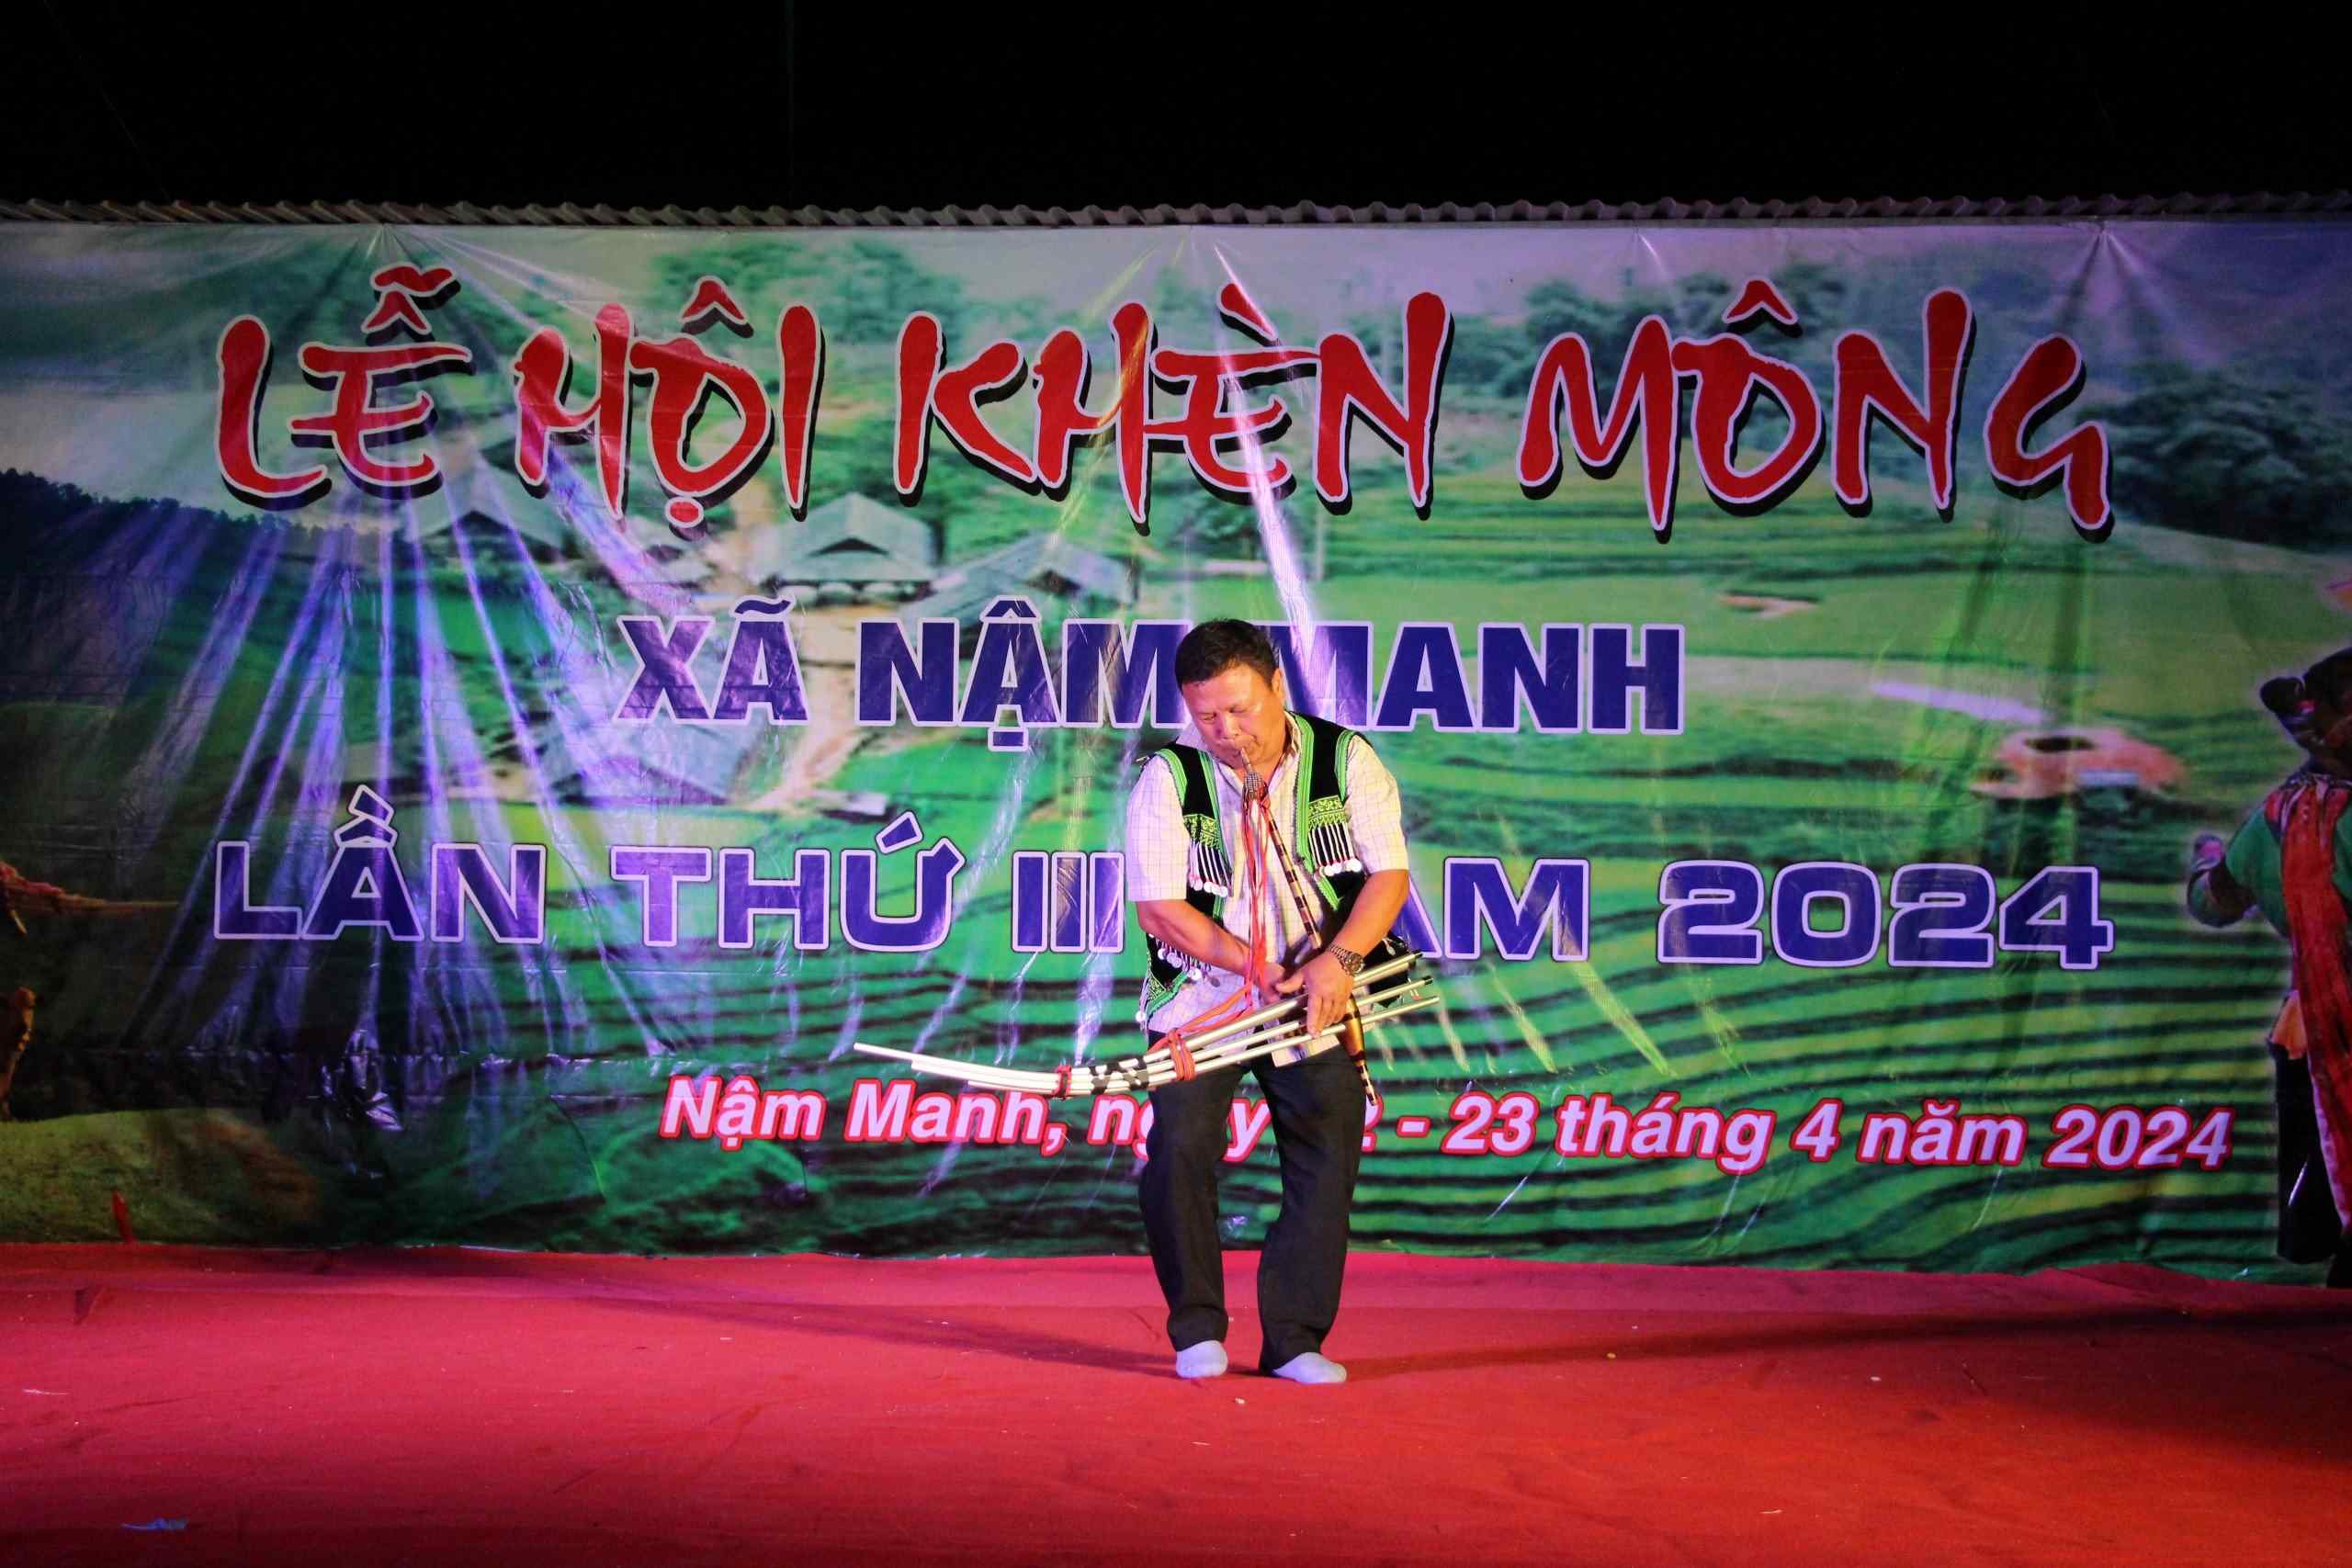  Tiết mục biểu diễn khèn mông của đội văn nghệ bản Nậm Làn, xã Nậm Manh.